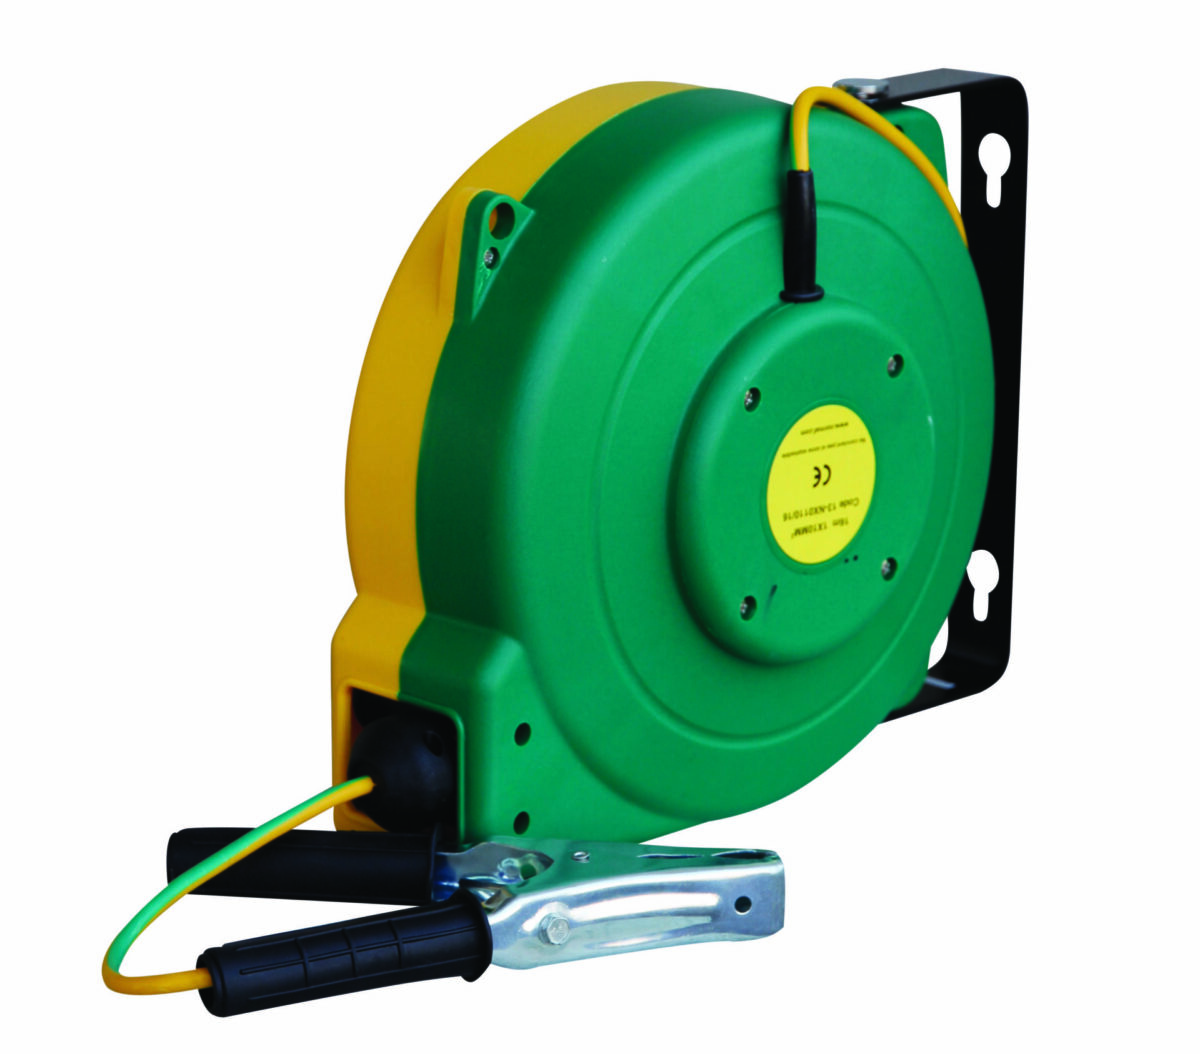 Enrouleur automatique pour liaison équipotentielle avec 16 m de câble 8 mm² vert/jaune